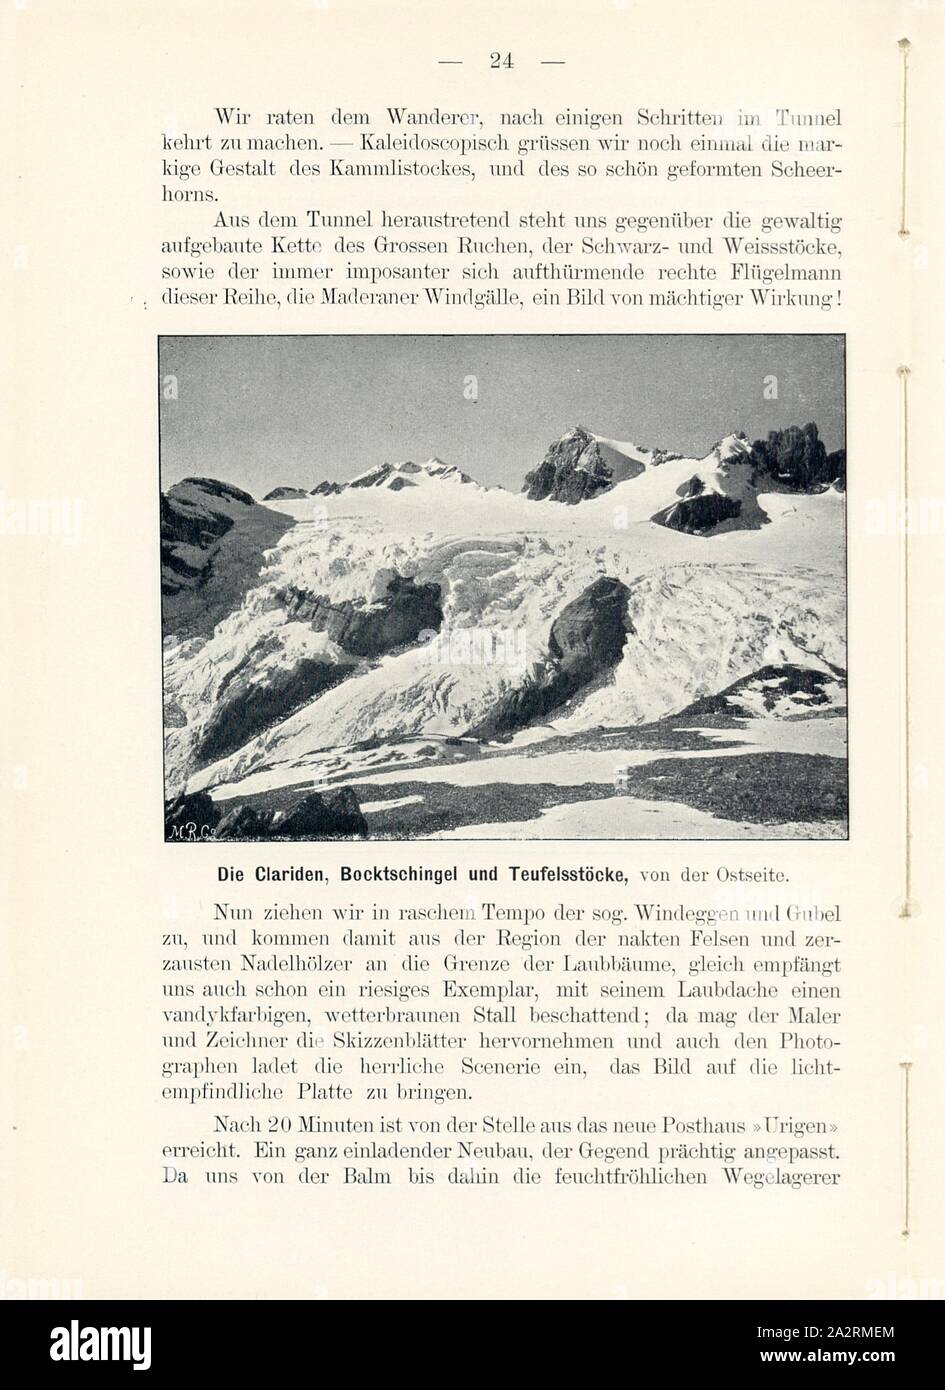 The Clariden, Bursschingel and Teufelsstöcke, from the east side, Glarus Alps, Signed: M.R.C, Fig. 23, p. 24, Meisenbach, Riffarth und Co. (imp.), 1900, J. Knobel: Illustrierter Reisebegleiter für die Alpenstrasse des Klausen und ihre Zufahrtslinien. Glarus: Buchdruckerei J. Spälti, 1900 Stock Photo